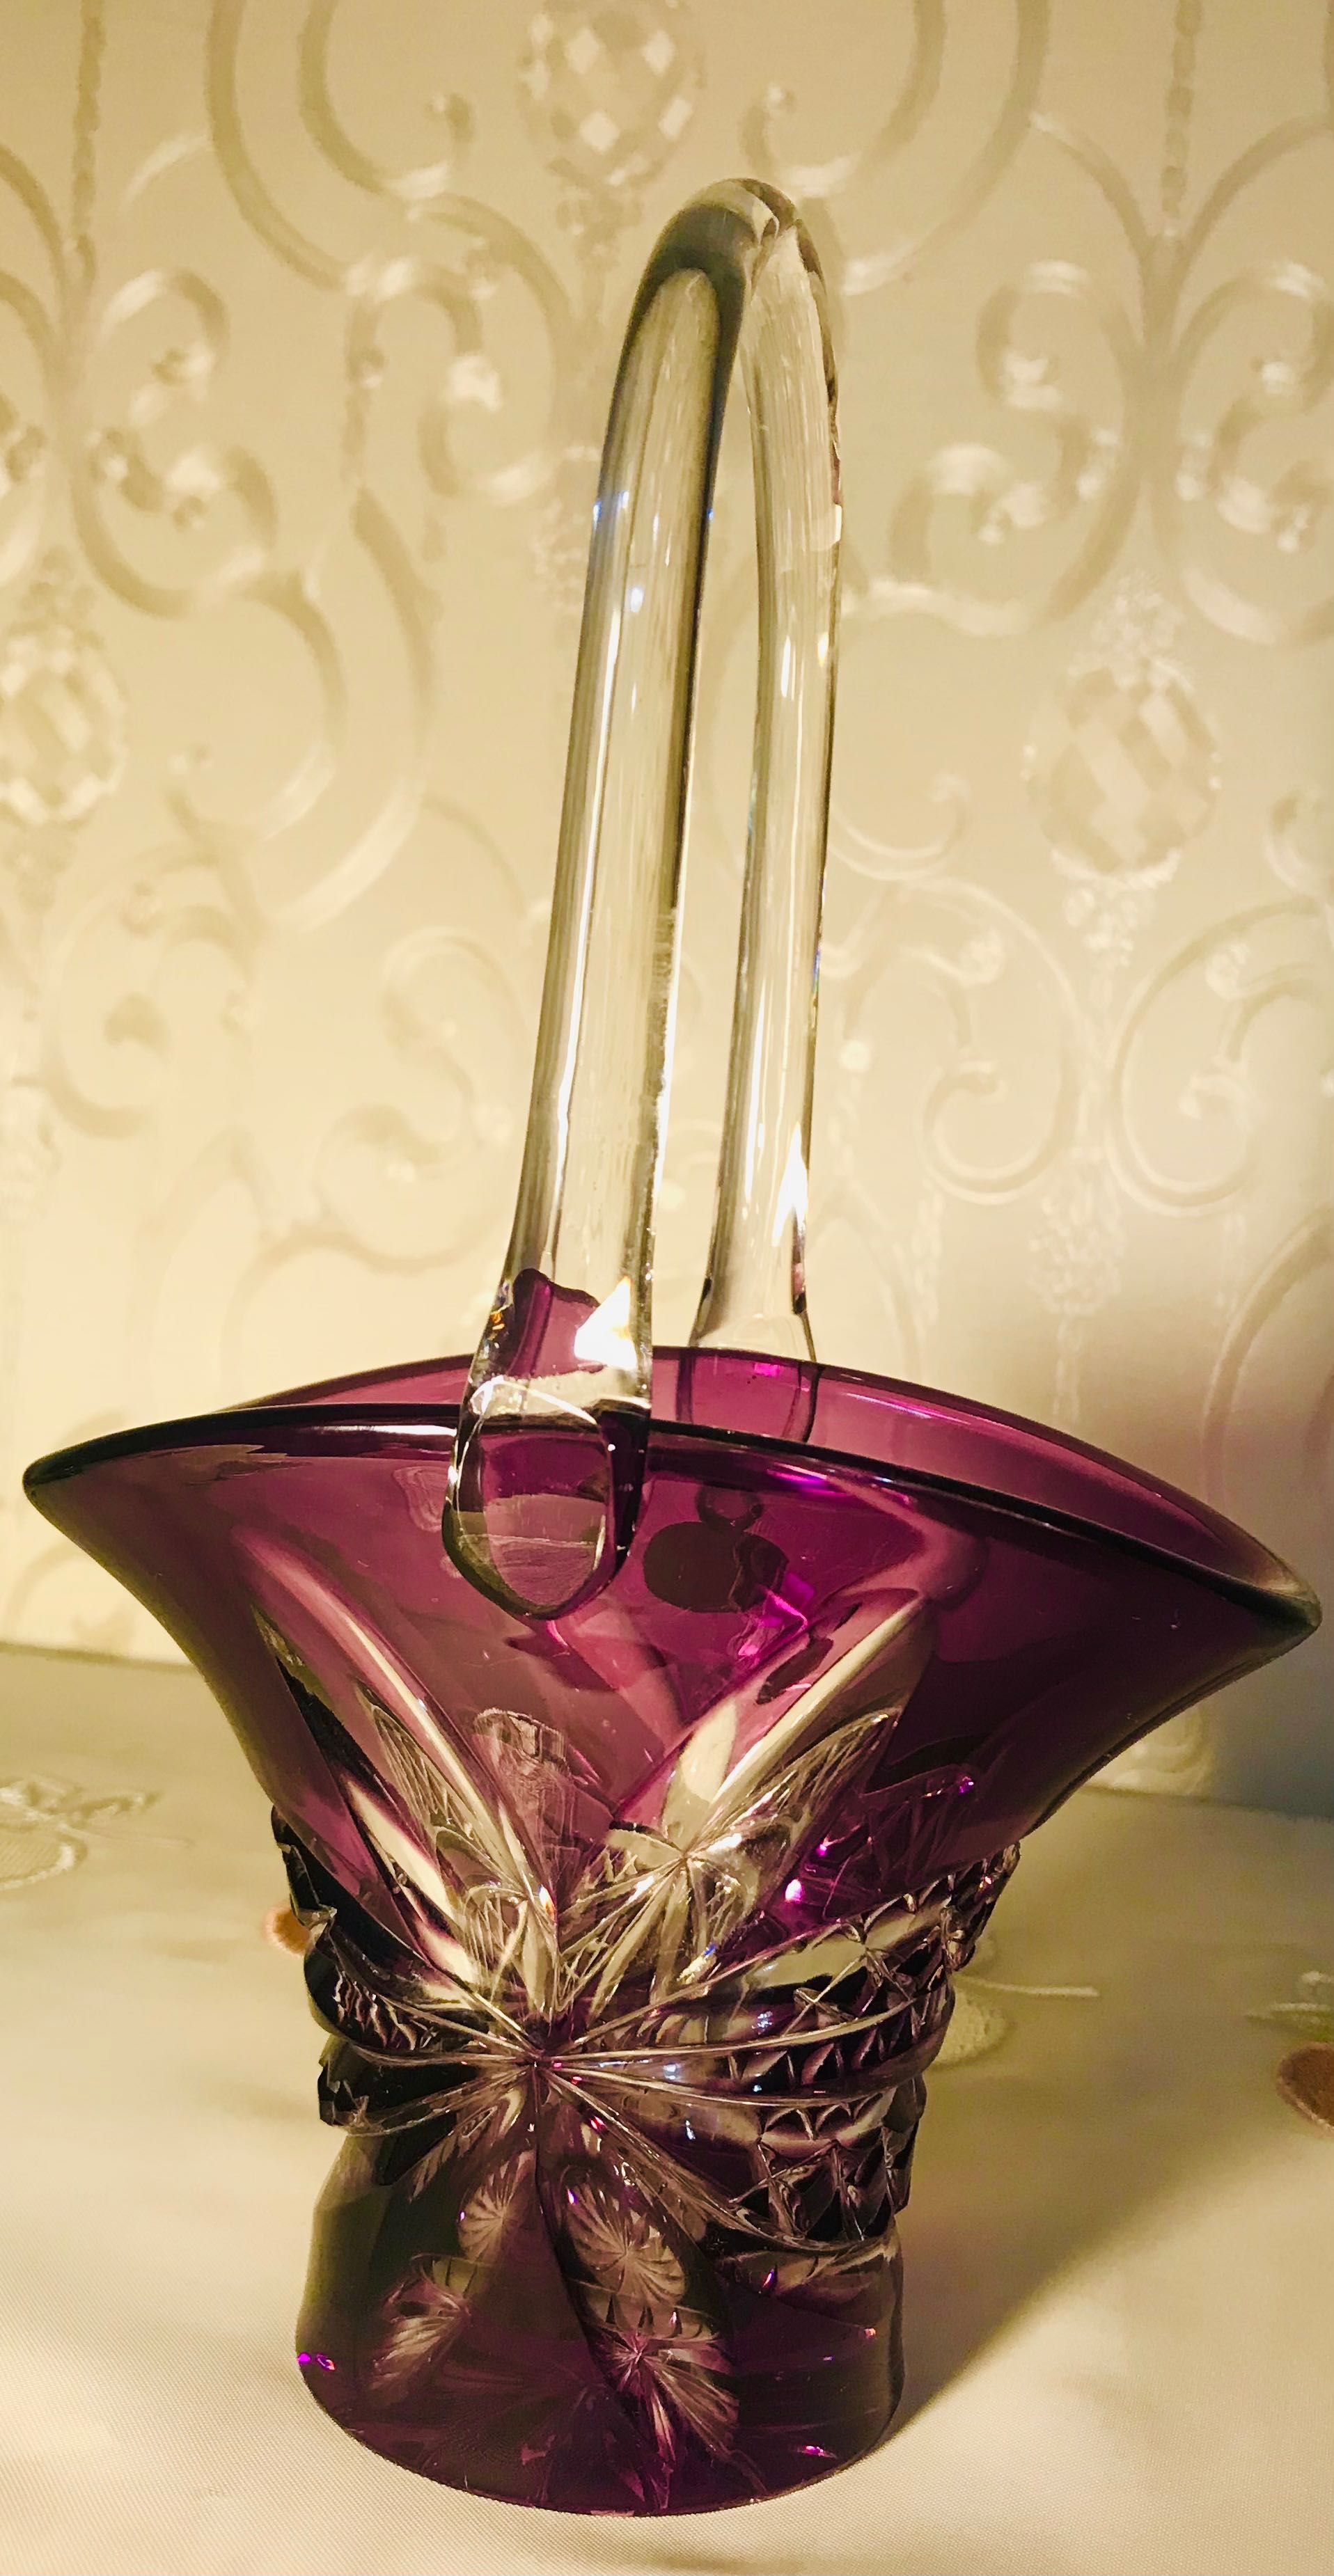 Коллекционная вазочка конфетница, цветной аметистовый хрусталь.Винтаж